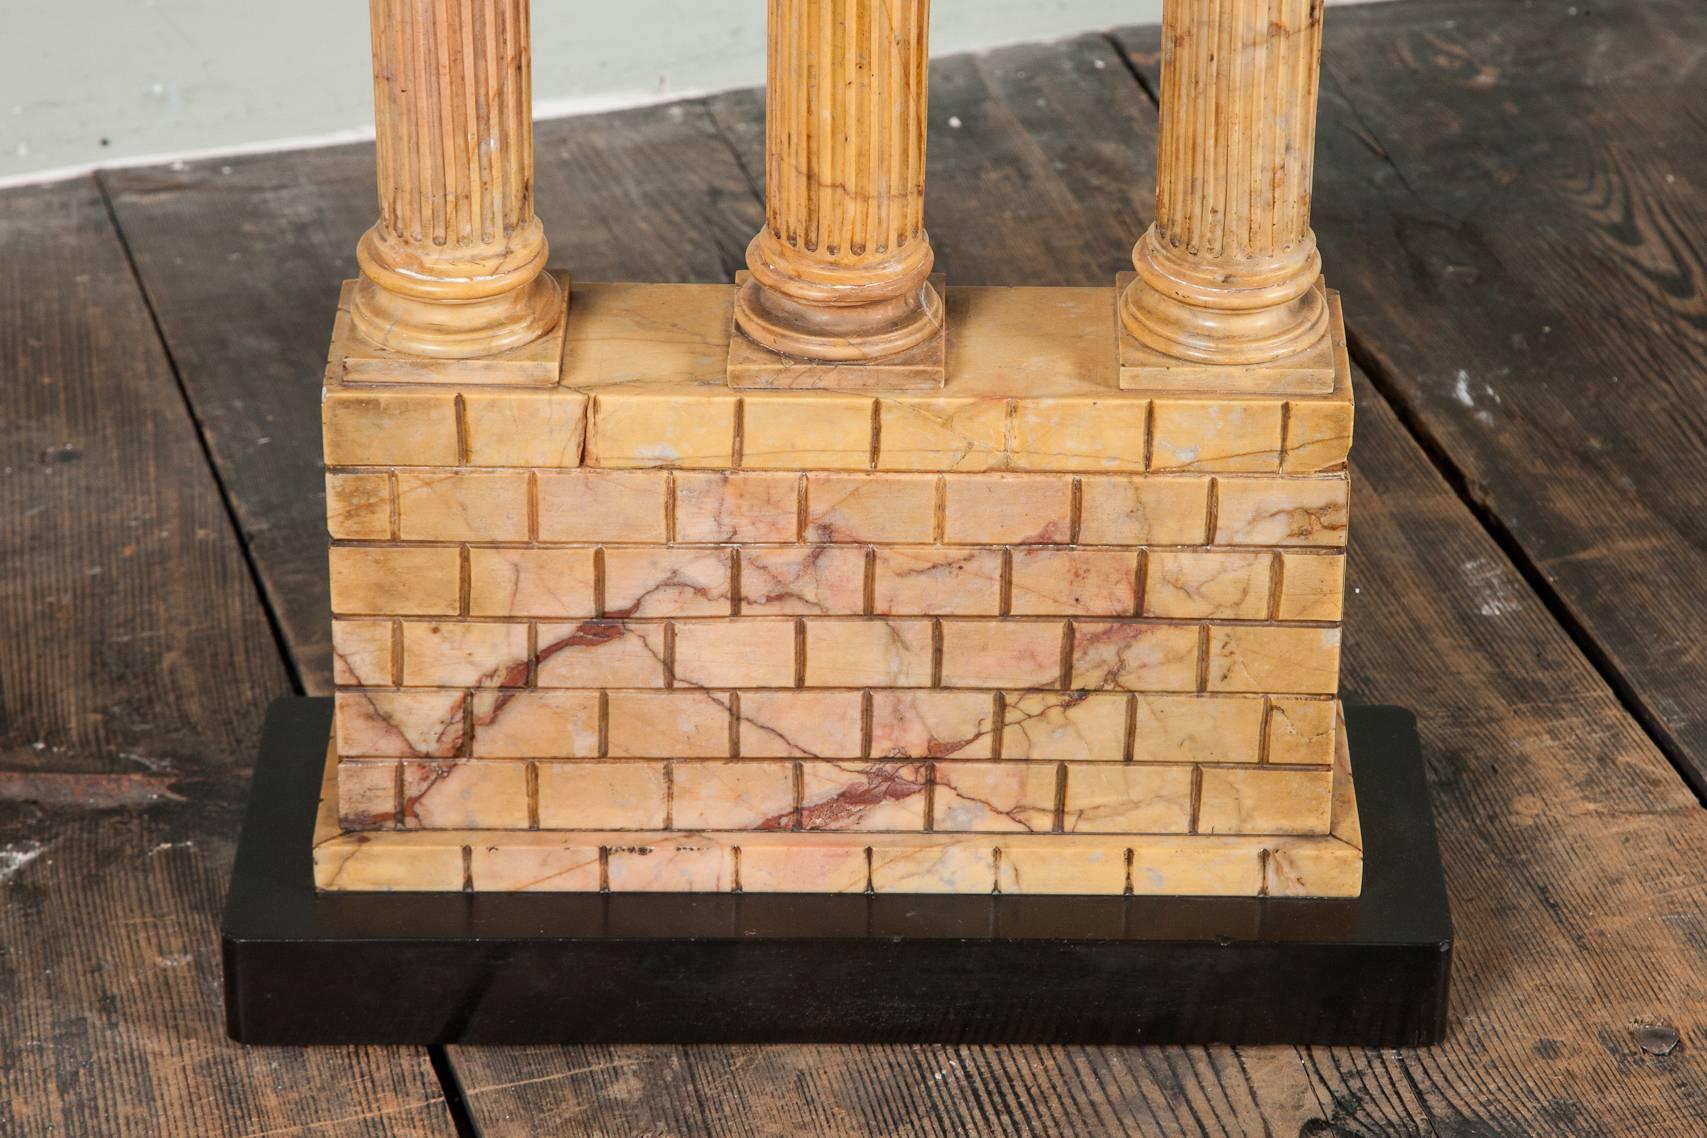 Eine ungewöhnlich große geschnitzte Giallo Antico Grand Tour Modell des Tempels von Caster und Pollux von beeindruckender Größe die fragmentierte Architrav und Gesims in der korinthischen Ordnung über kannelierten korinthischen Säulen und Tempel